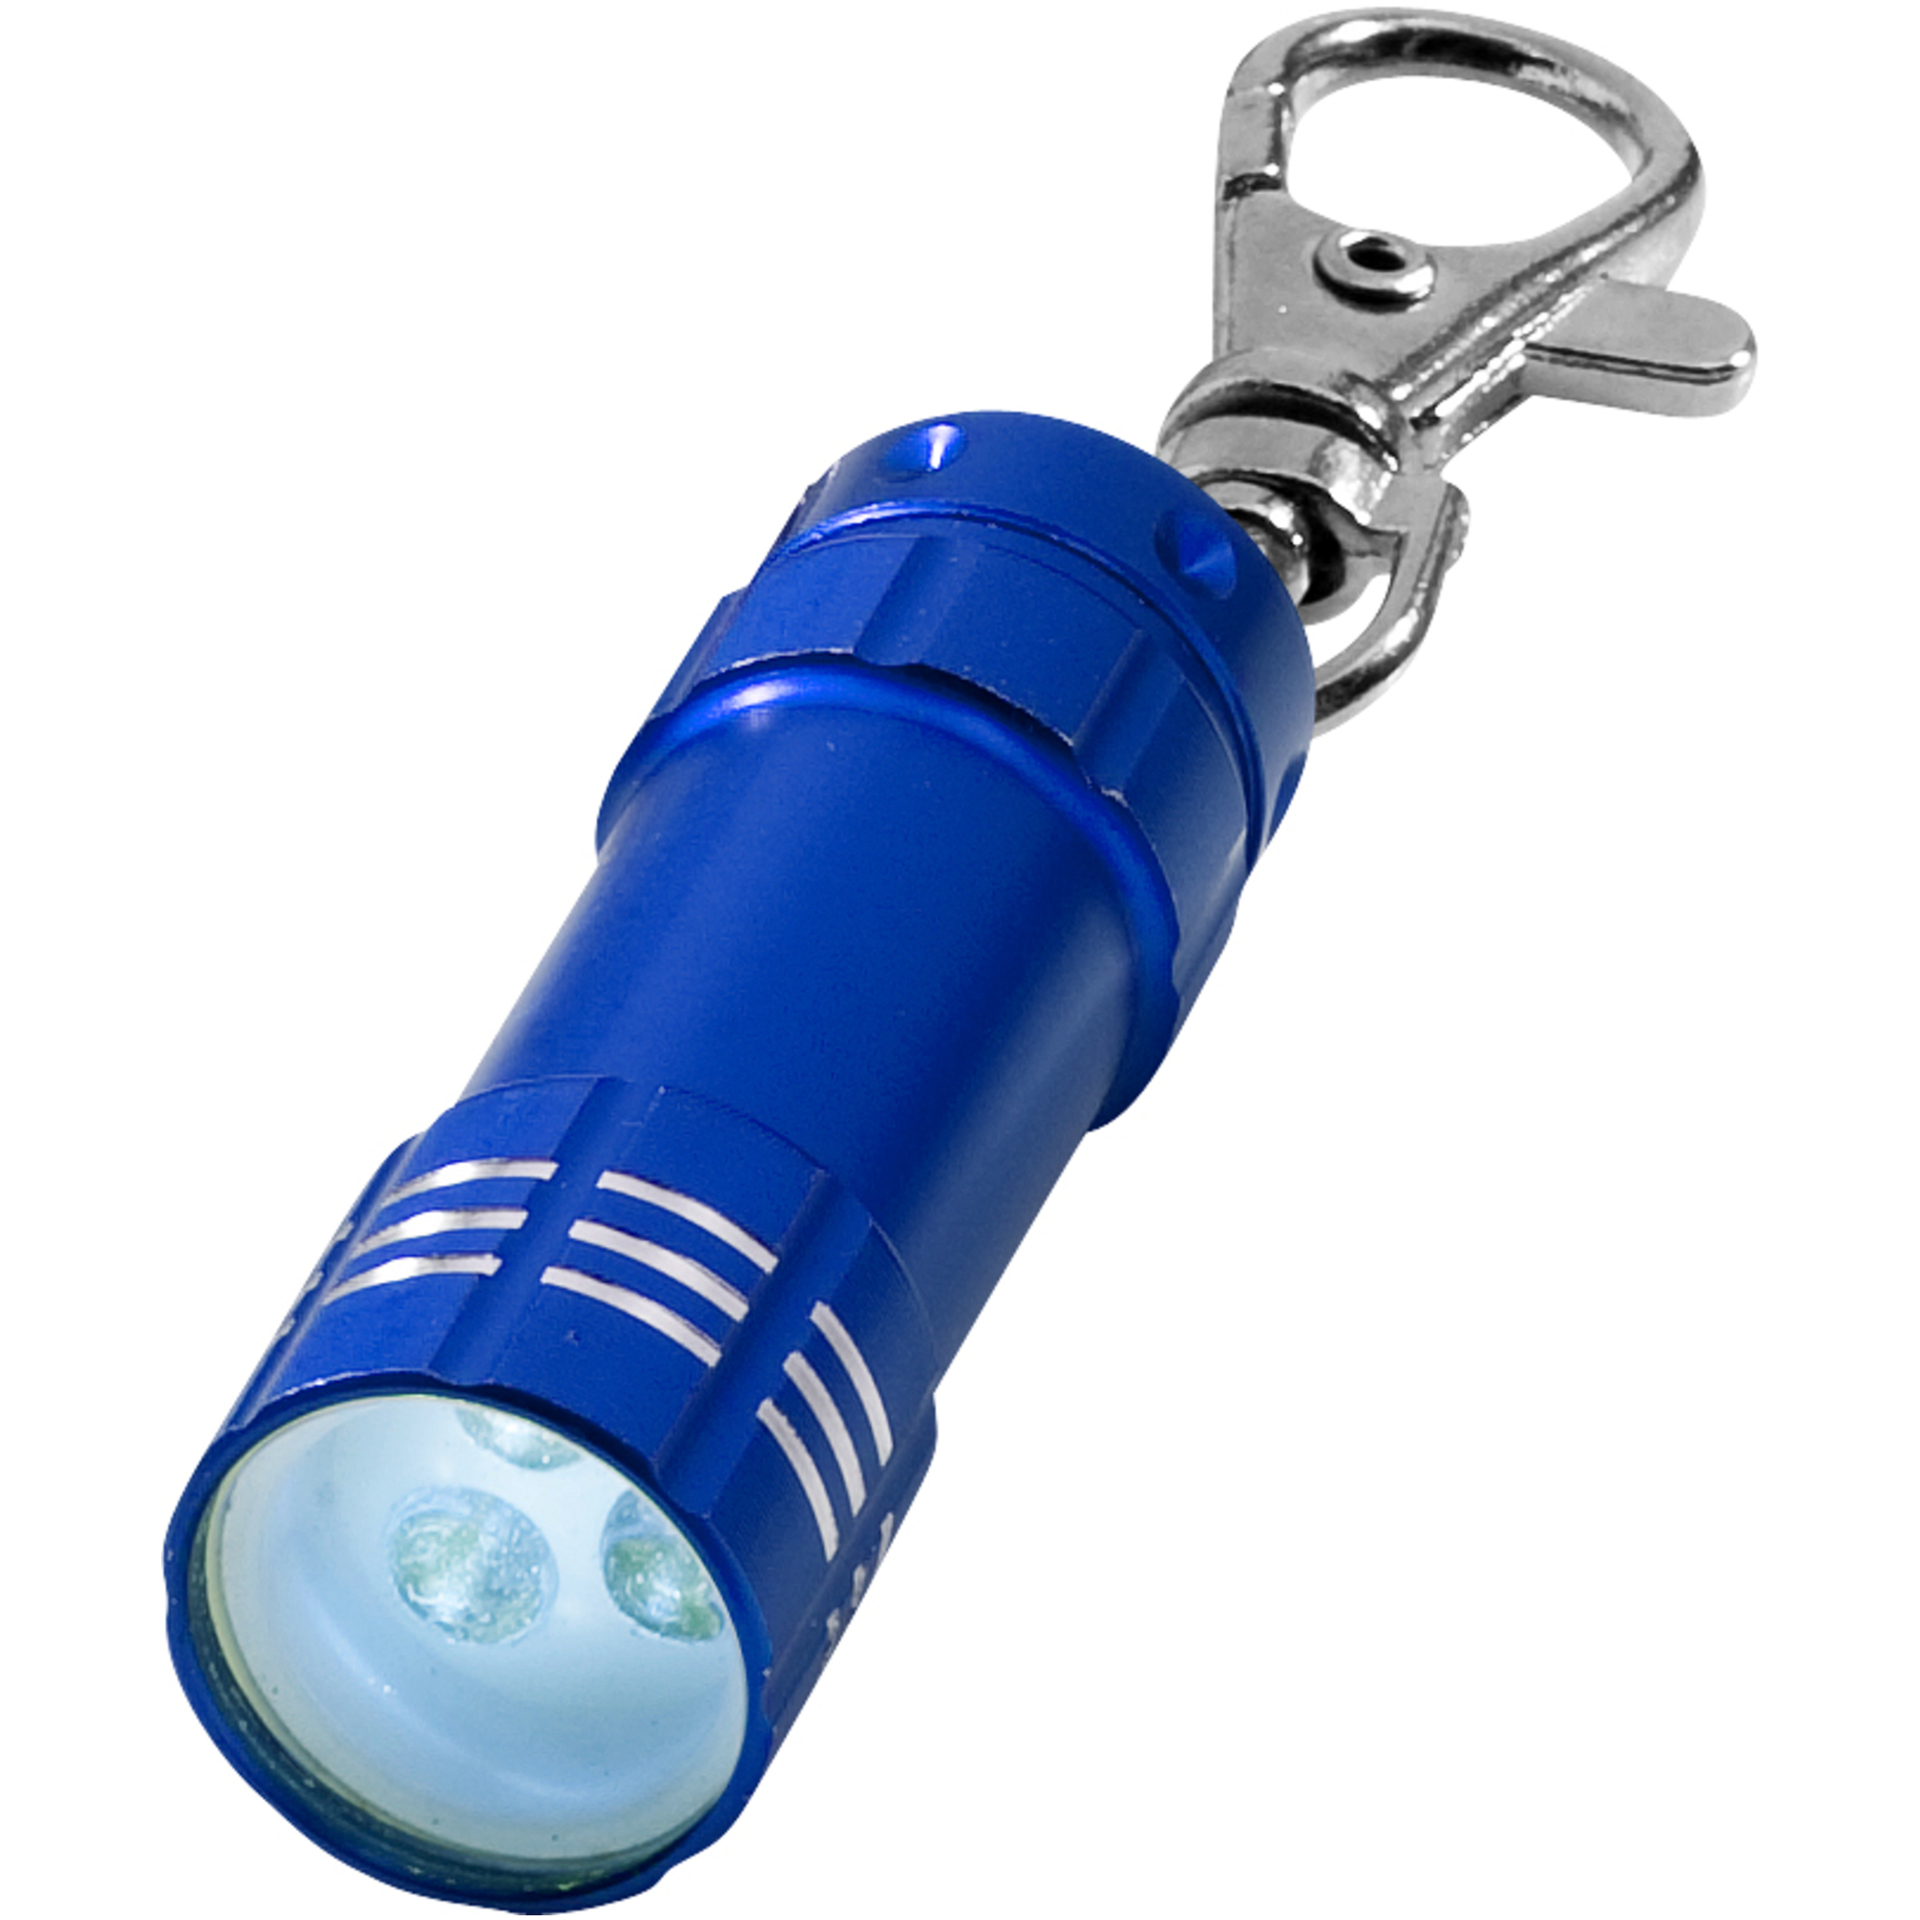 Keylight in blue